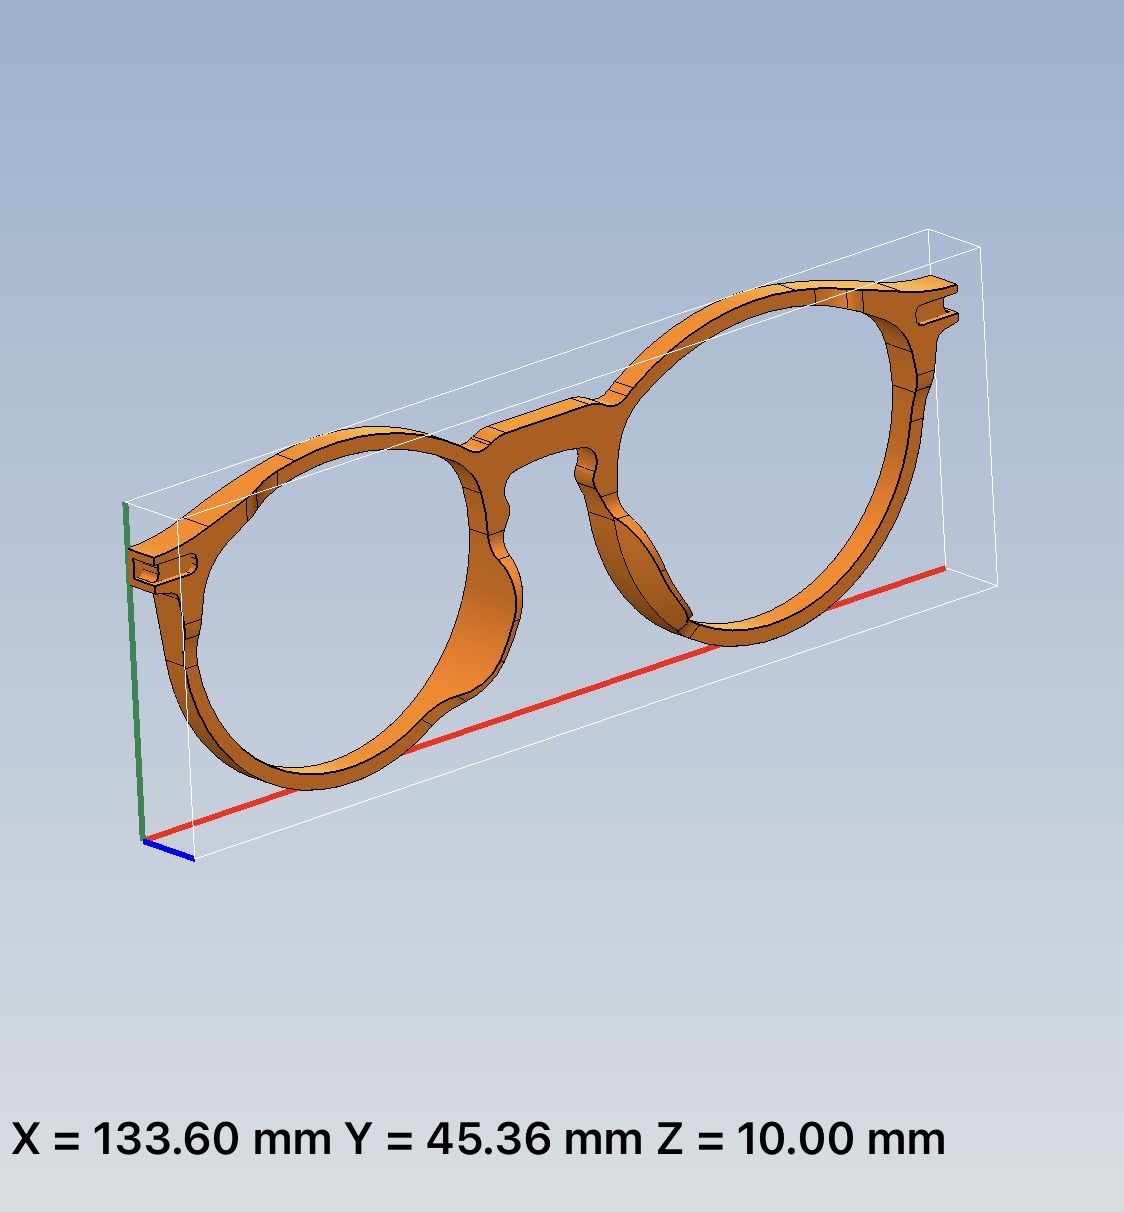 Thiết kế tùy chỉnh kích thước với mô hình 3D bằng phần mềm chuyên nghiệp solidworks